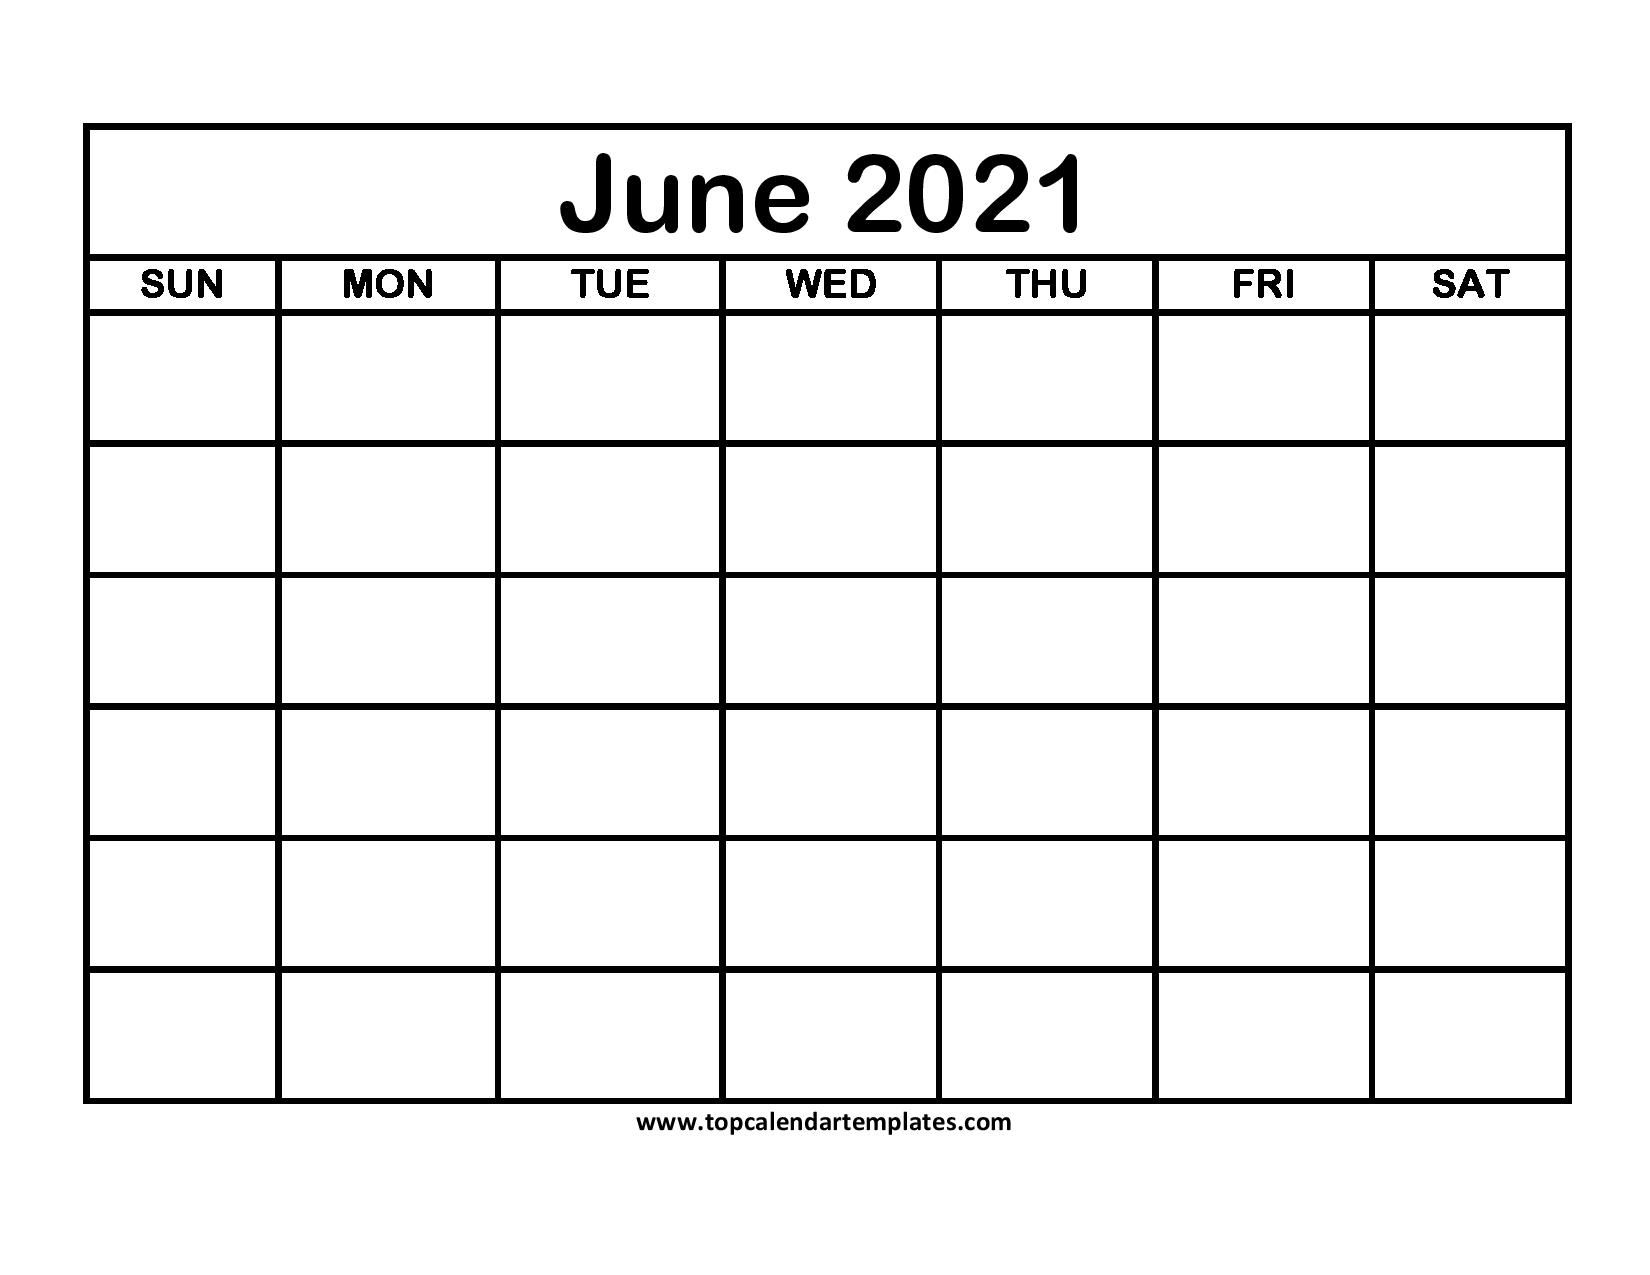 Printable June 2021 Calendar Template - Pdf, Word, Excel